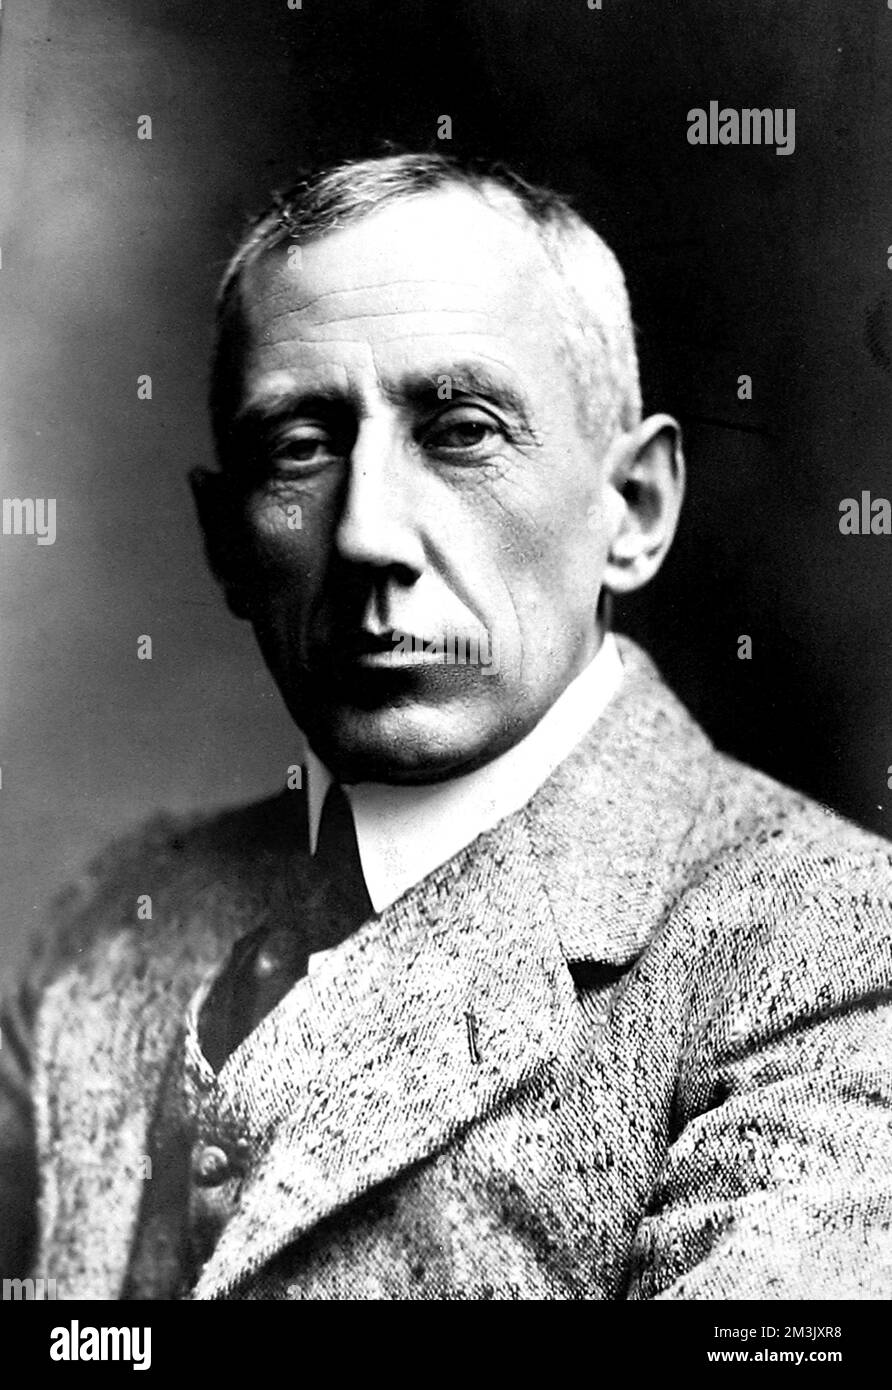 Roald Engelbreth Gravning Amundsen (1872 - 1928), norwegischer Forscher, der als erster Mann die Nordwestpassage navigierte und den Südpol erreichte. Stockfoto